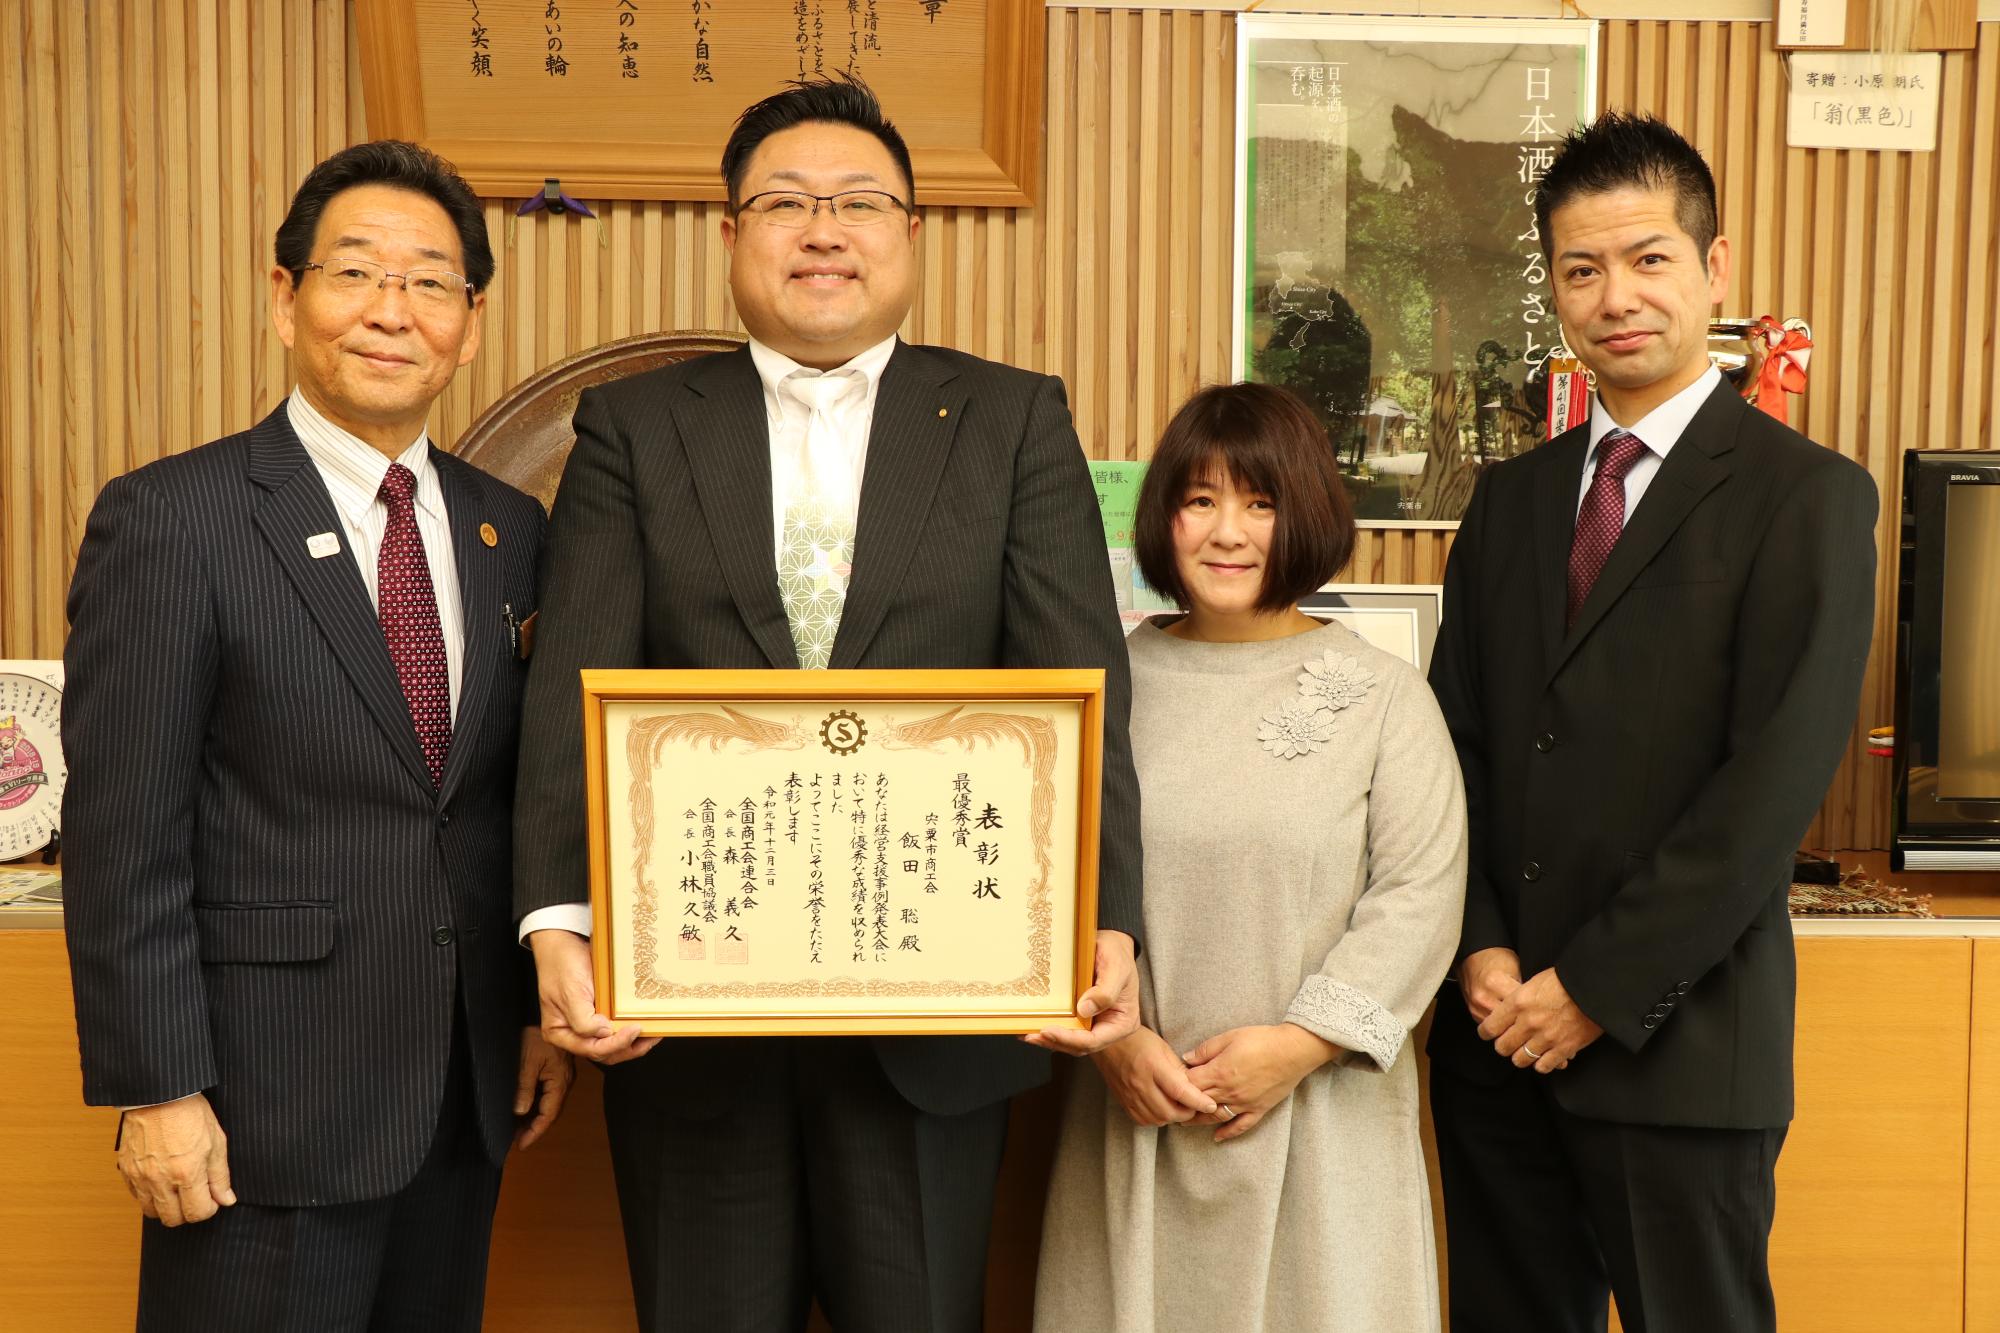 賞状を手にした商工会飯田さんと木南正清さん、めぐみさんと左脇市長の写真